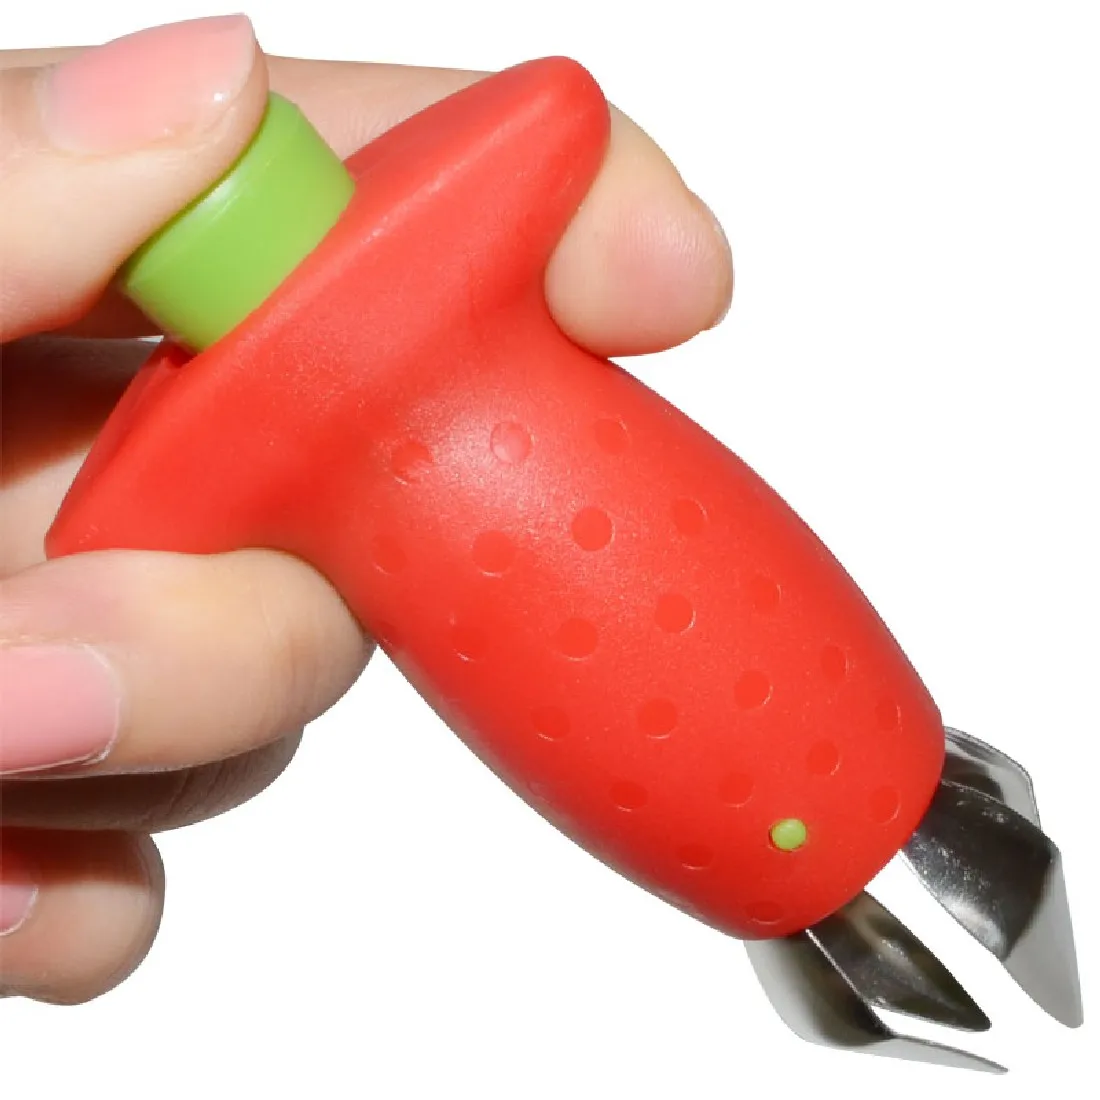 Хорошо Красный инструмент для удаления чашелистиков с клубники топ лист гаджет для удаления томатные стебли нож для фруктов удаления стебля портативная кухонная принадлежность